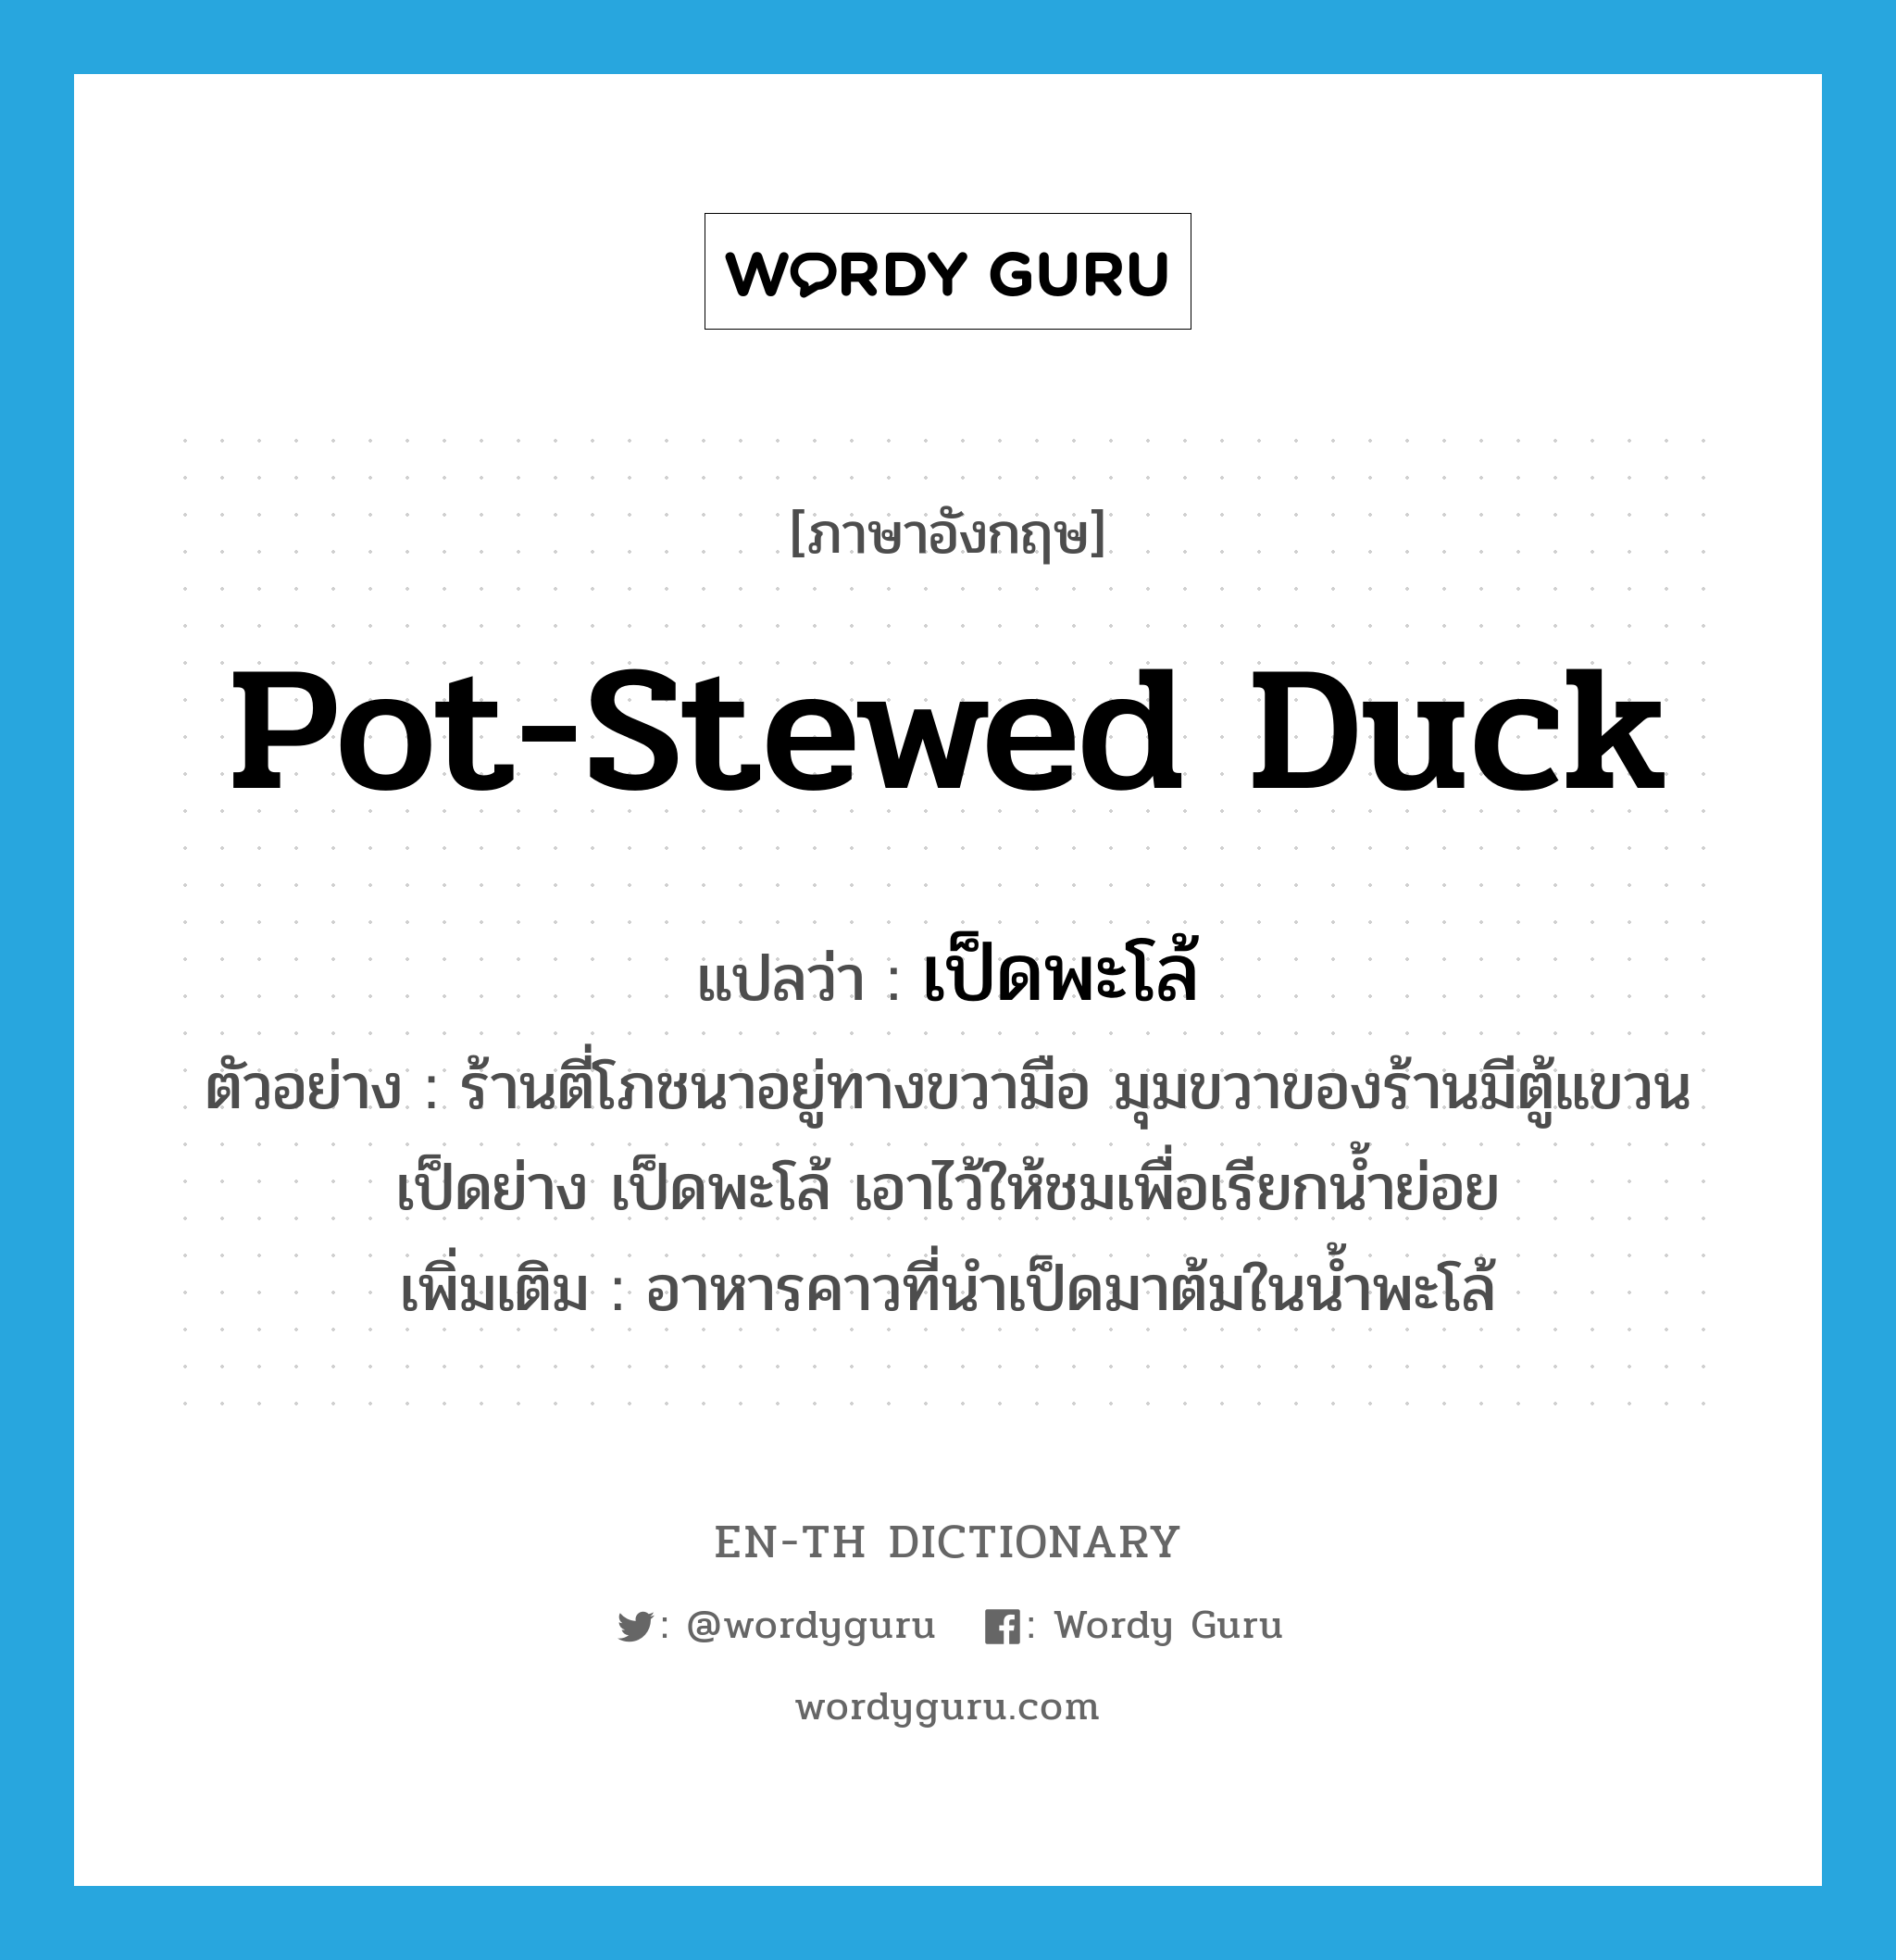 เป็ดพะโล้ ภาษาอังกฤษ?, คำศัพท์ภาษาอังกฤษ เป็ดพะโล้ แปลว่า pot-stewed duck ประเภท N ตัวอย่าง ร้านตี่โภชนาอยู่ทางขวามือ มุมขวาของร้านมีตู้แขวนเป็ดย่าง เป็ดพะโล้ เอาไว้ให้ชมเพื่อเรียกนํ้าย่อย เพิ่มเติม อาหารคาวที่นำเป็ดมาต้มในน้ำพะโล้ หมวด N